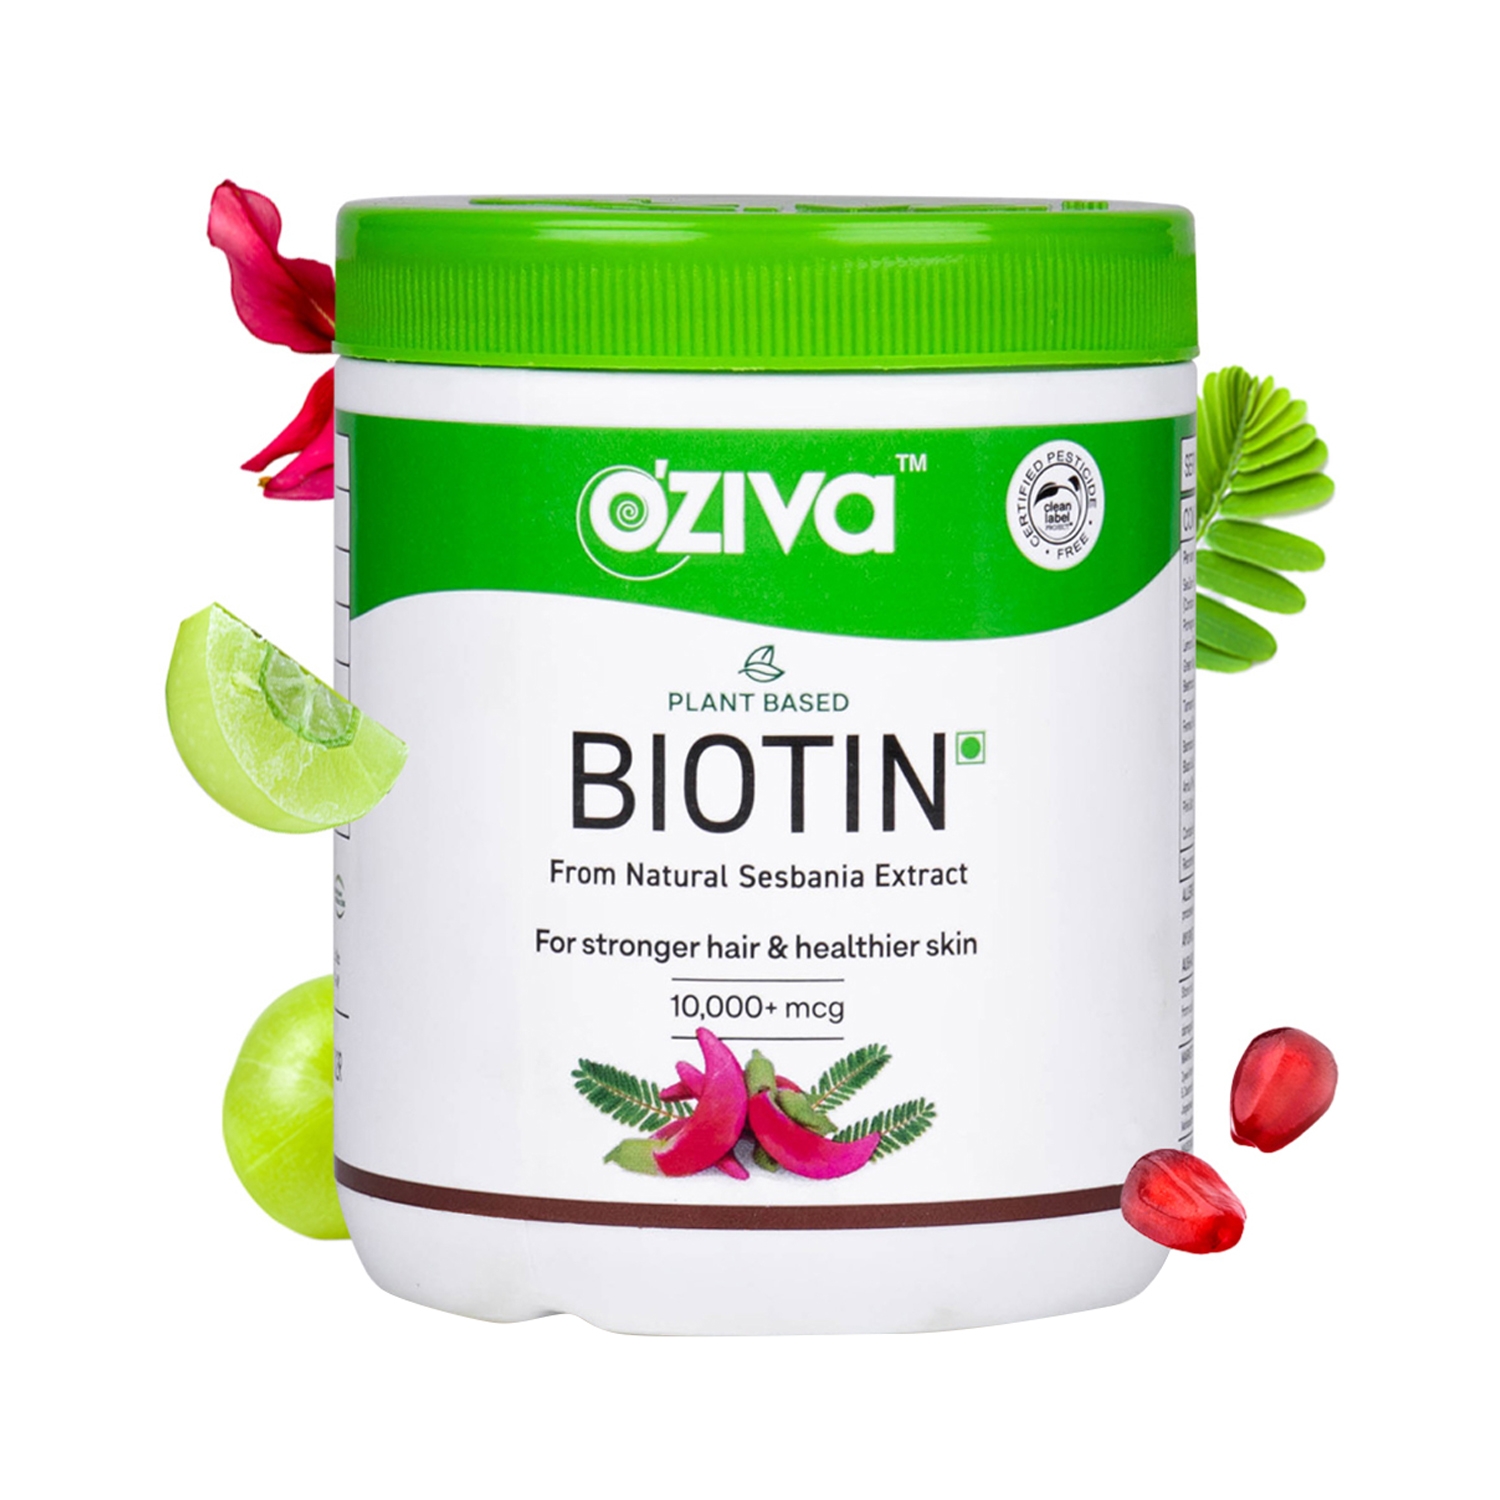 Oziva Plant Based Biotin 10000+ mcg Powder (125g)